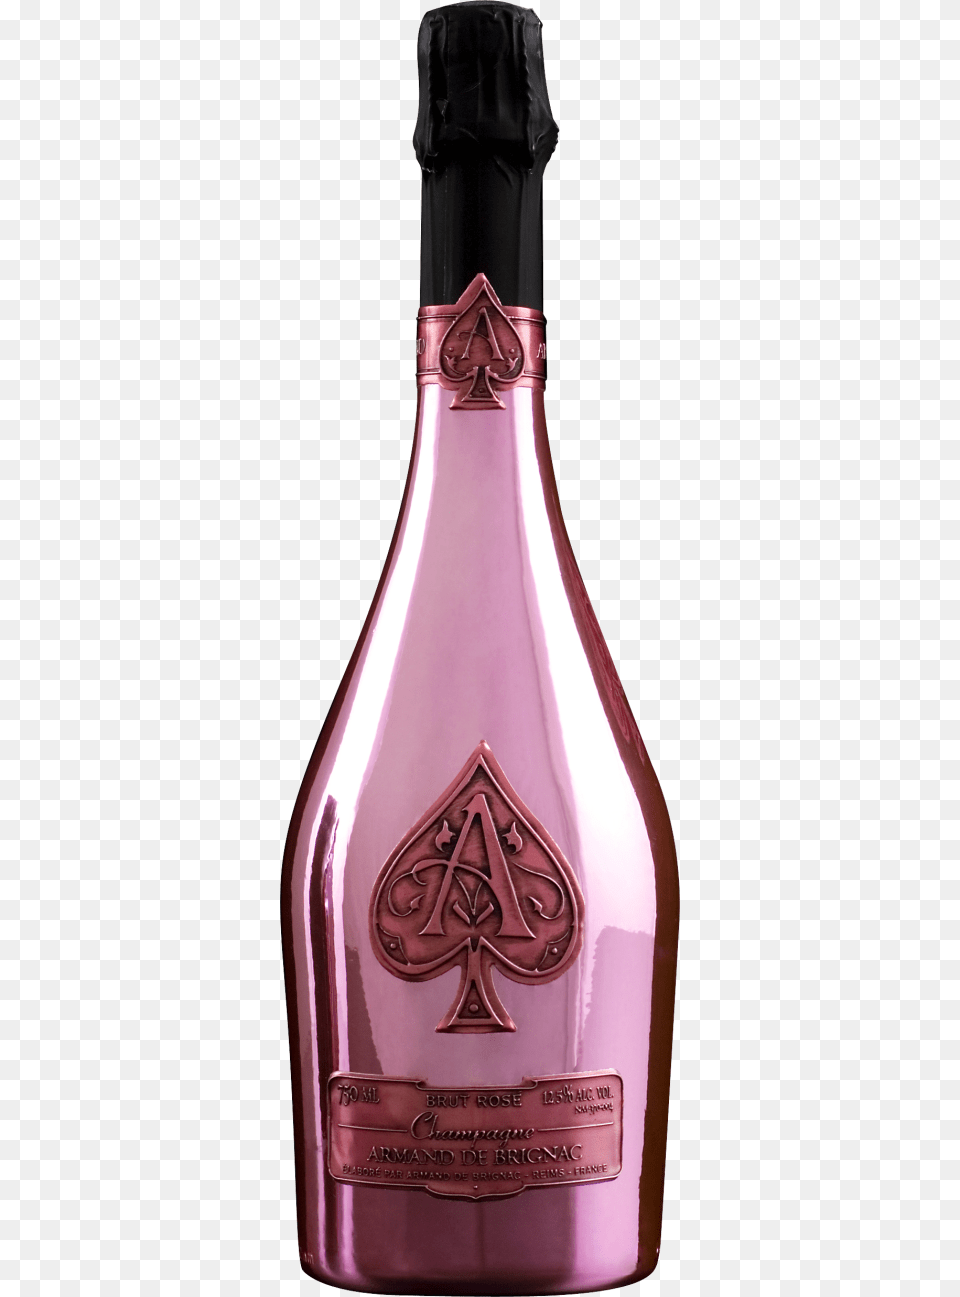 Armand De Brignac Ace Of Spades Champagne Rose, Alcohol, Beverage, Liquor, Bottle Png Image